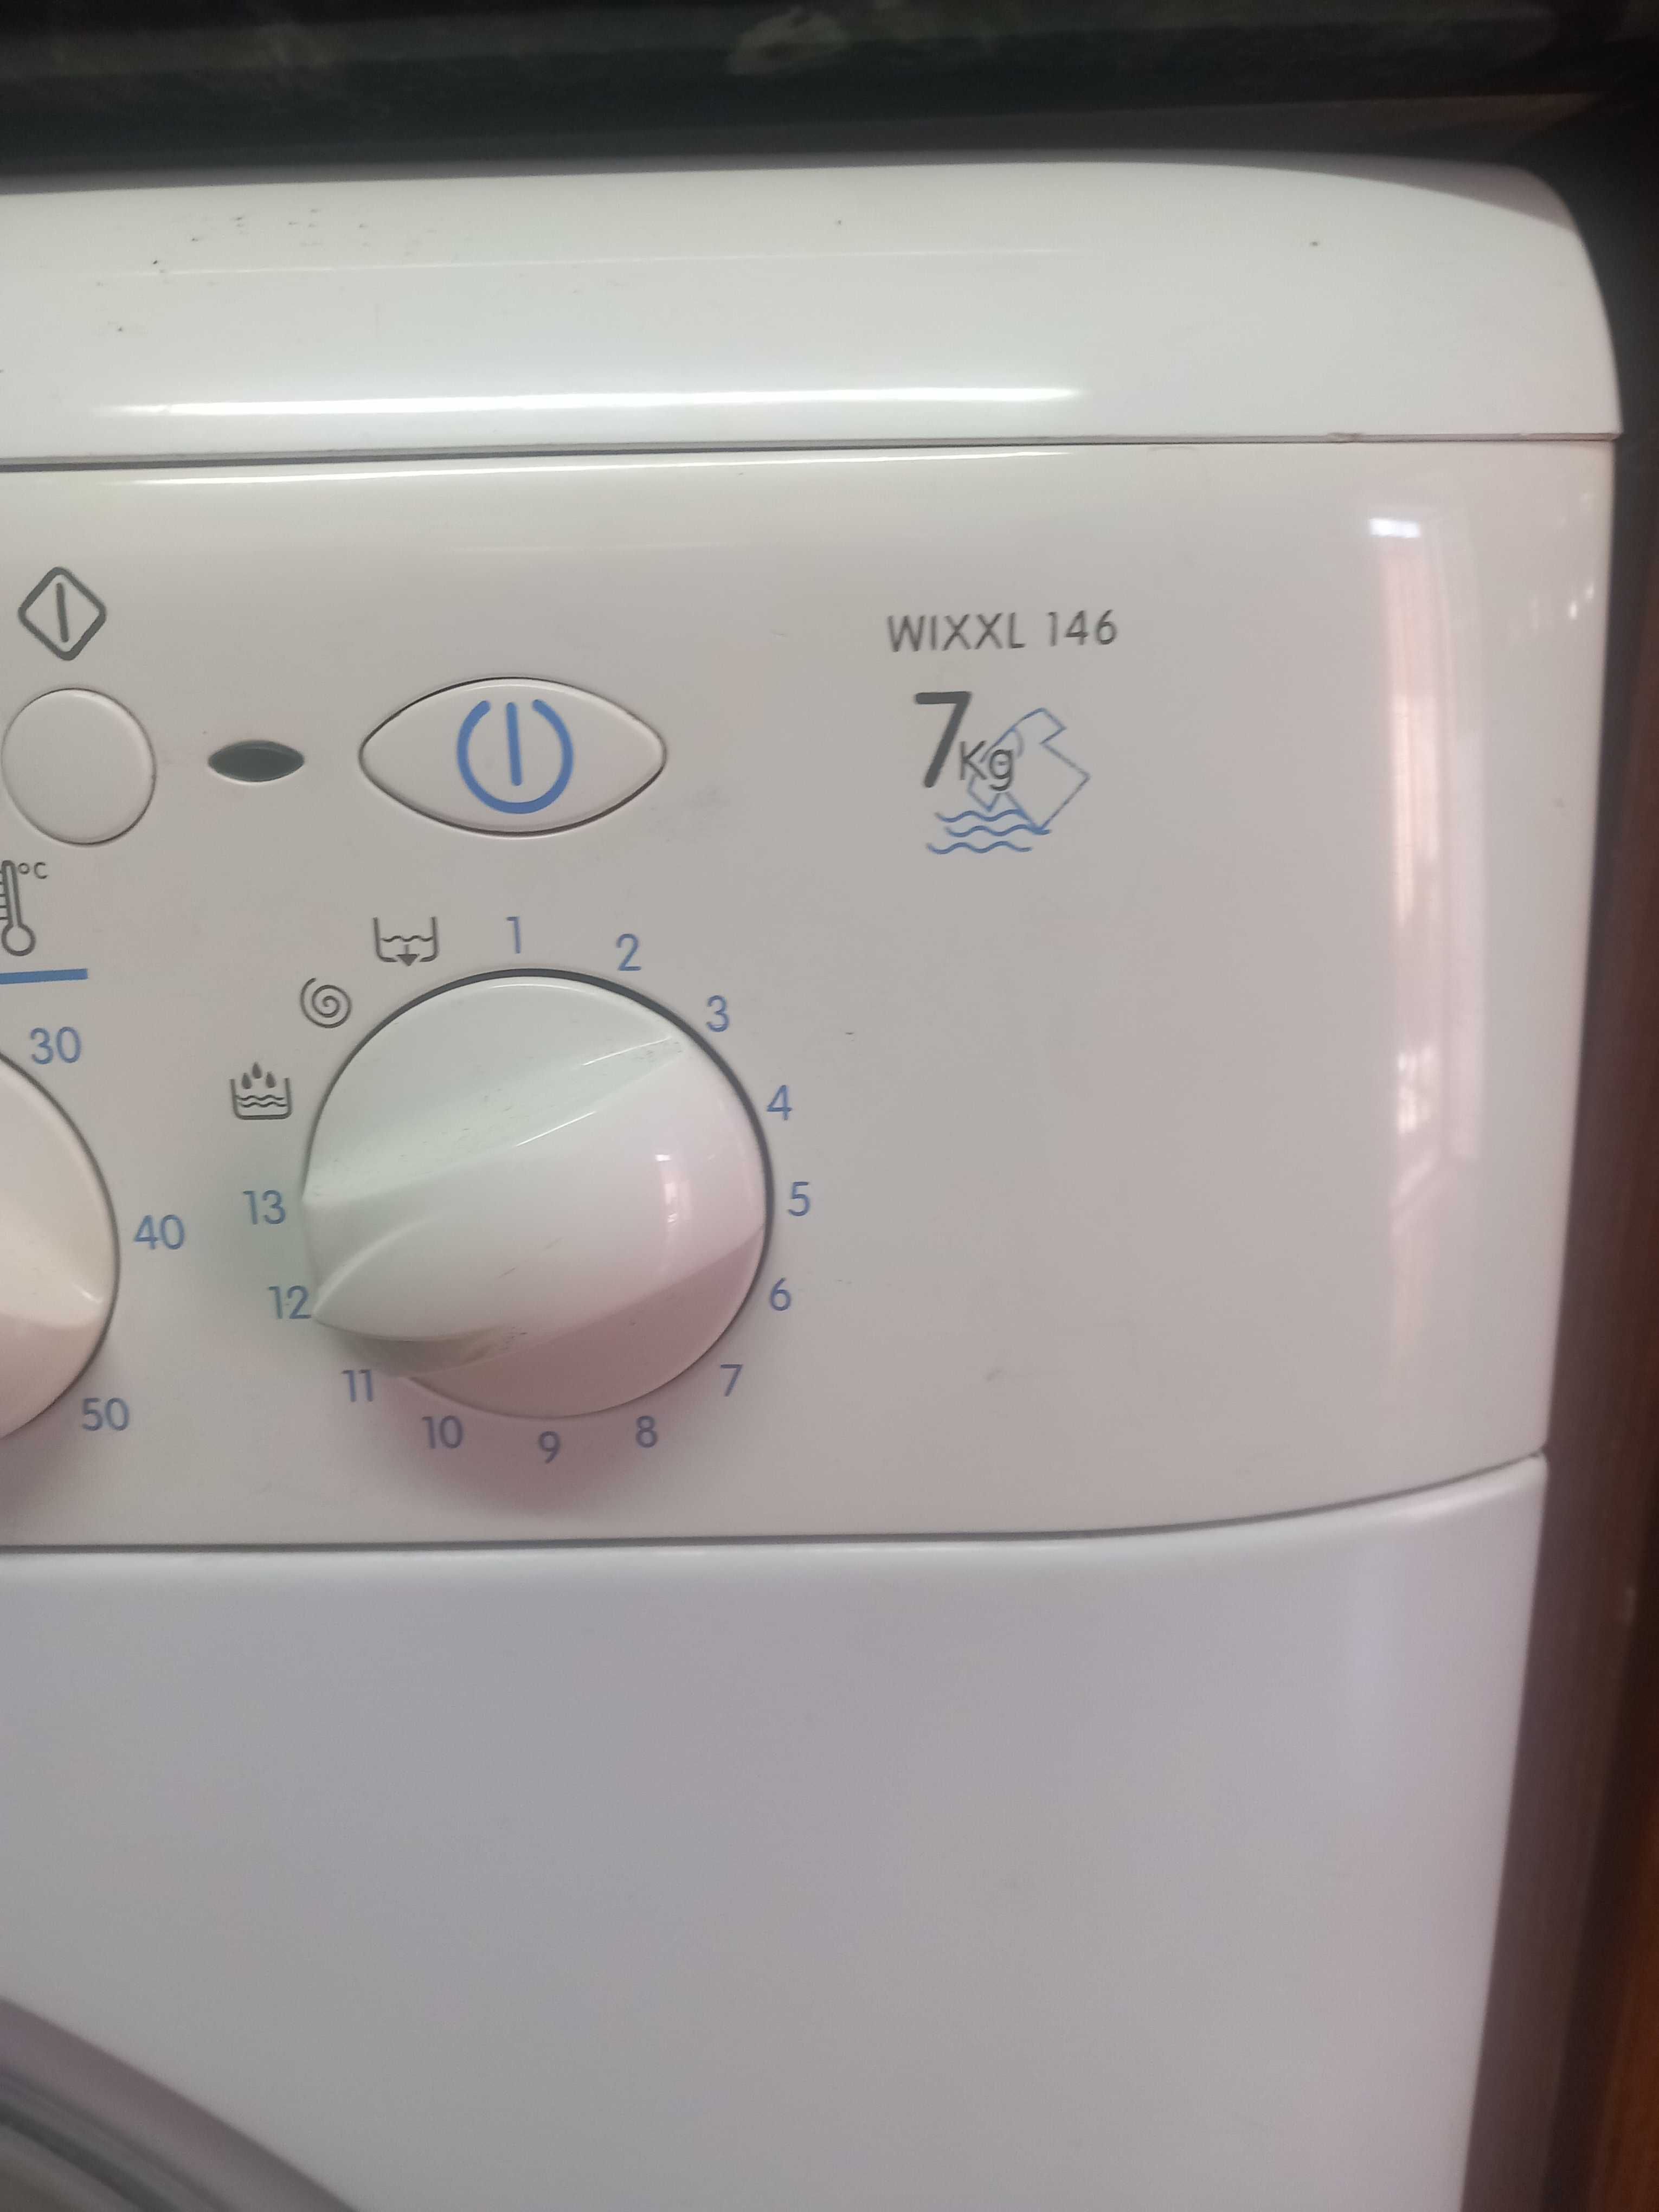 Maquina lavar roupa para pecas da marca indesit modelo wixxl 466